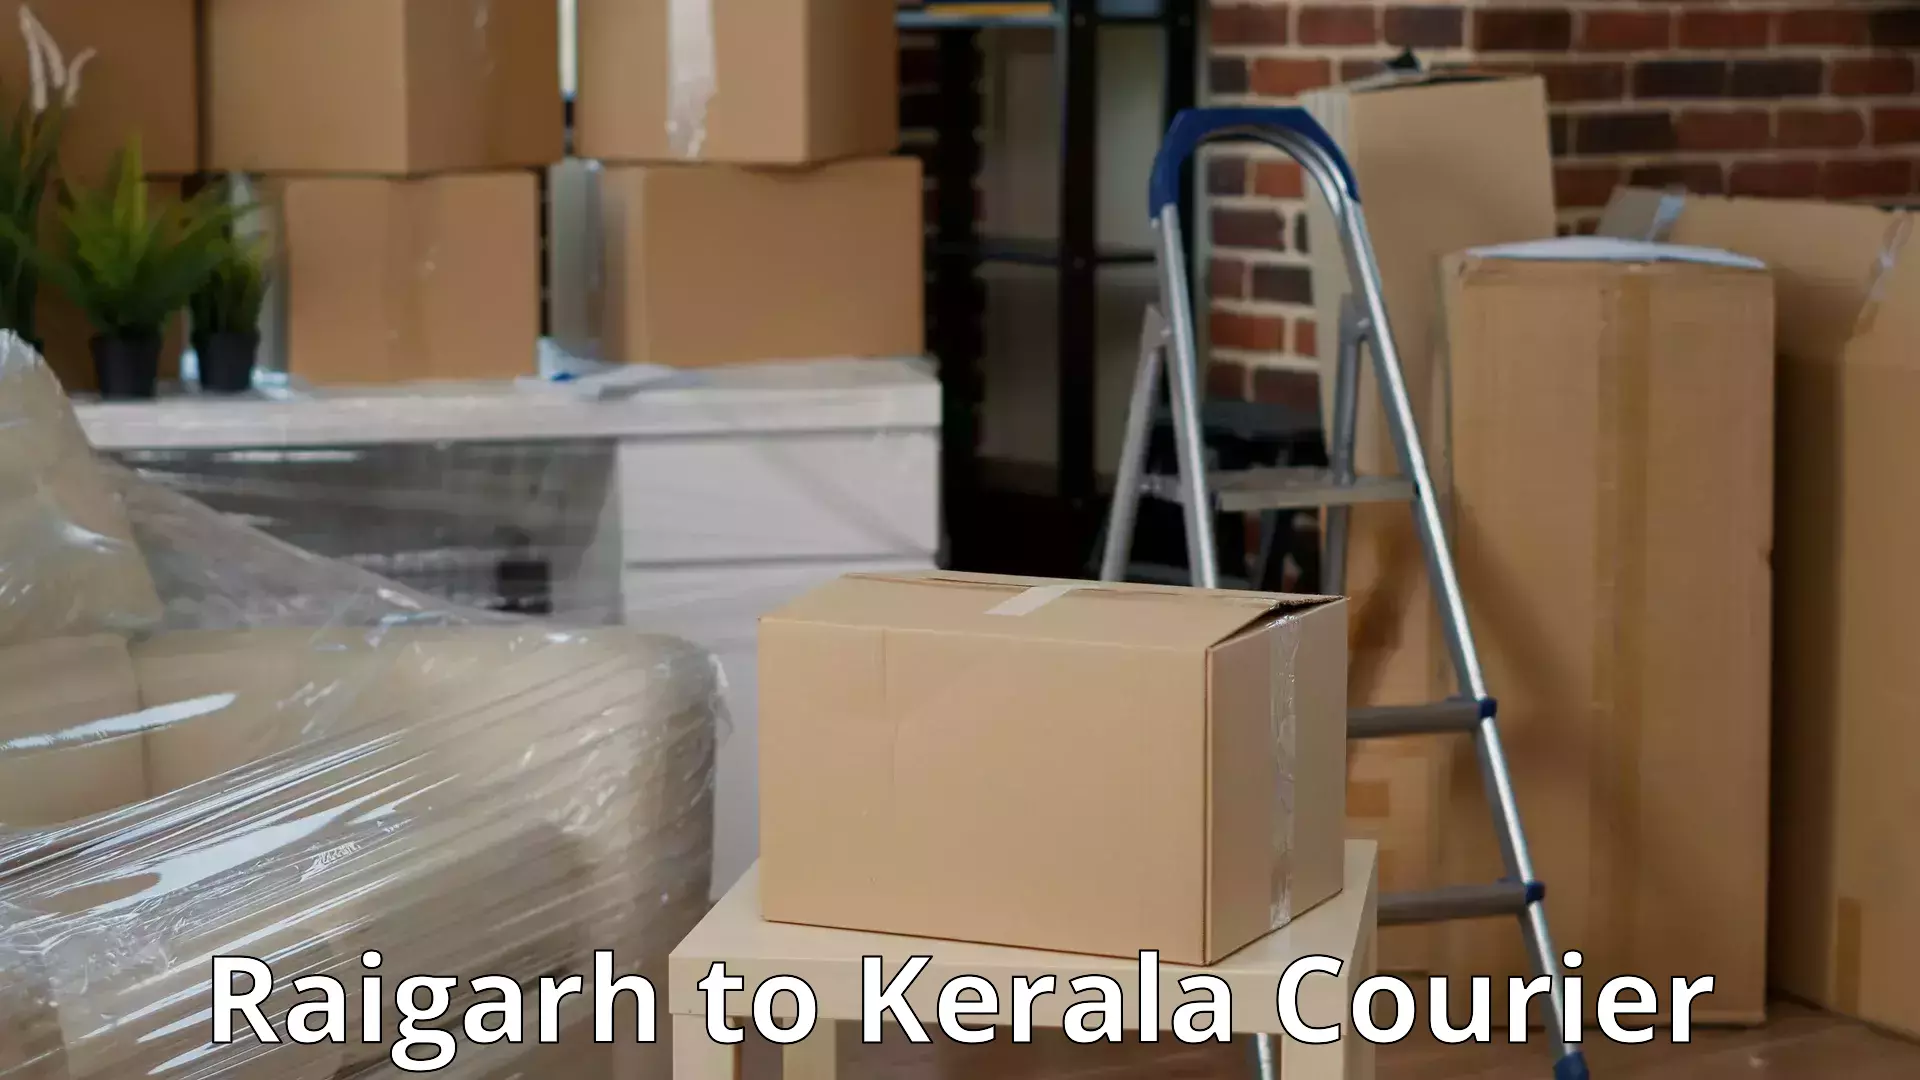 Moving and packing experts Raigarh to Mahatma Gandhi University Kottayam